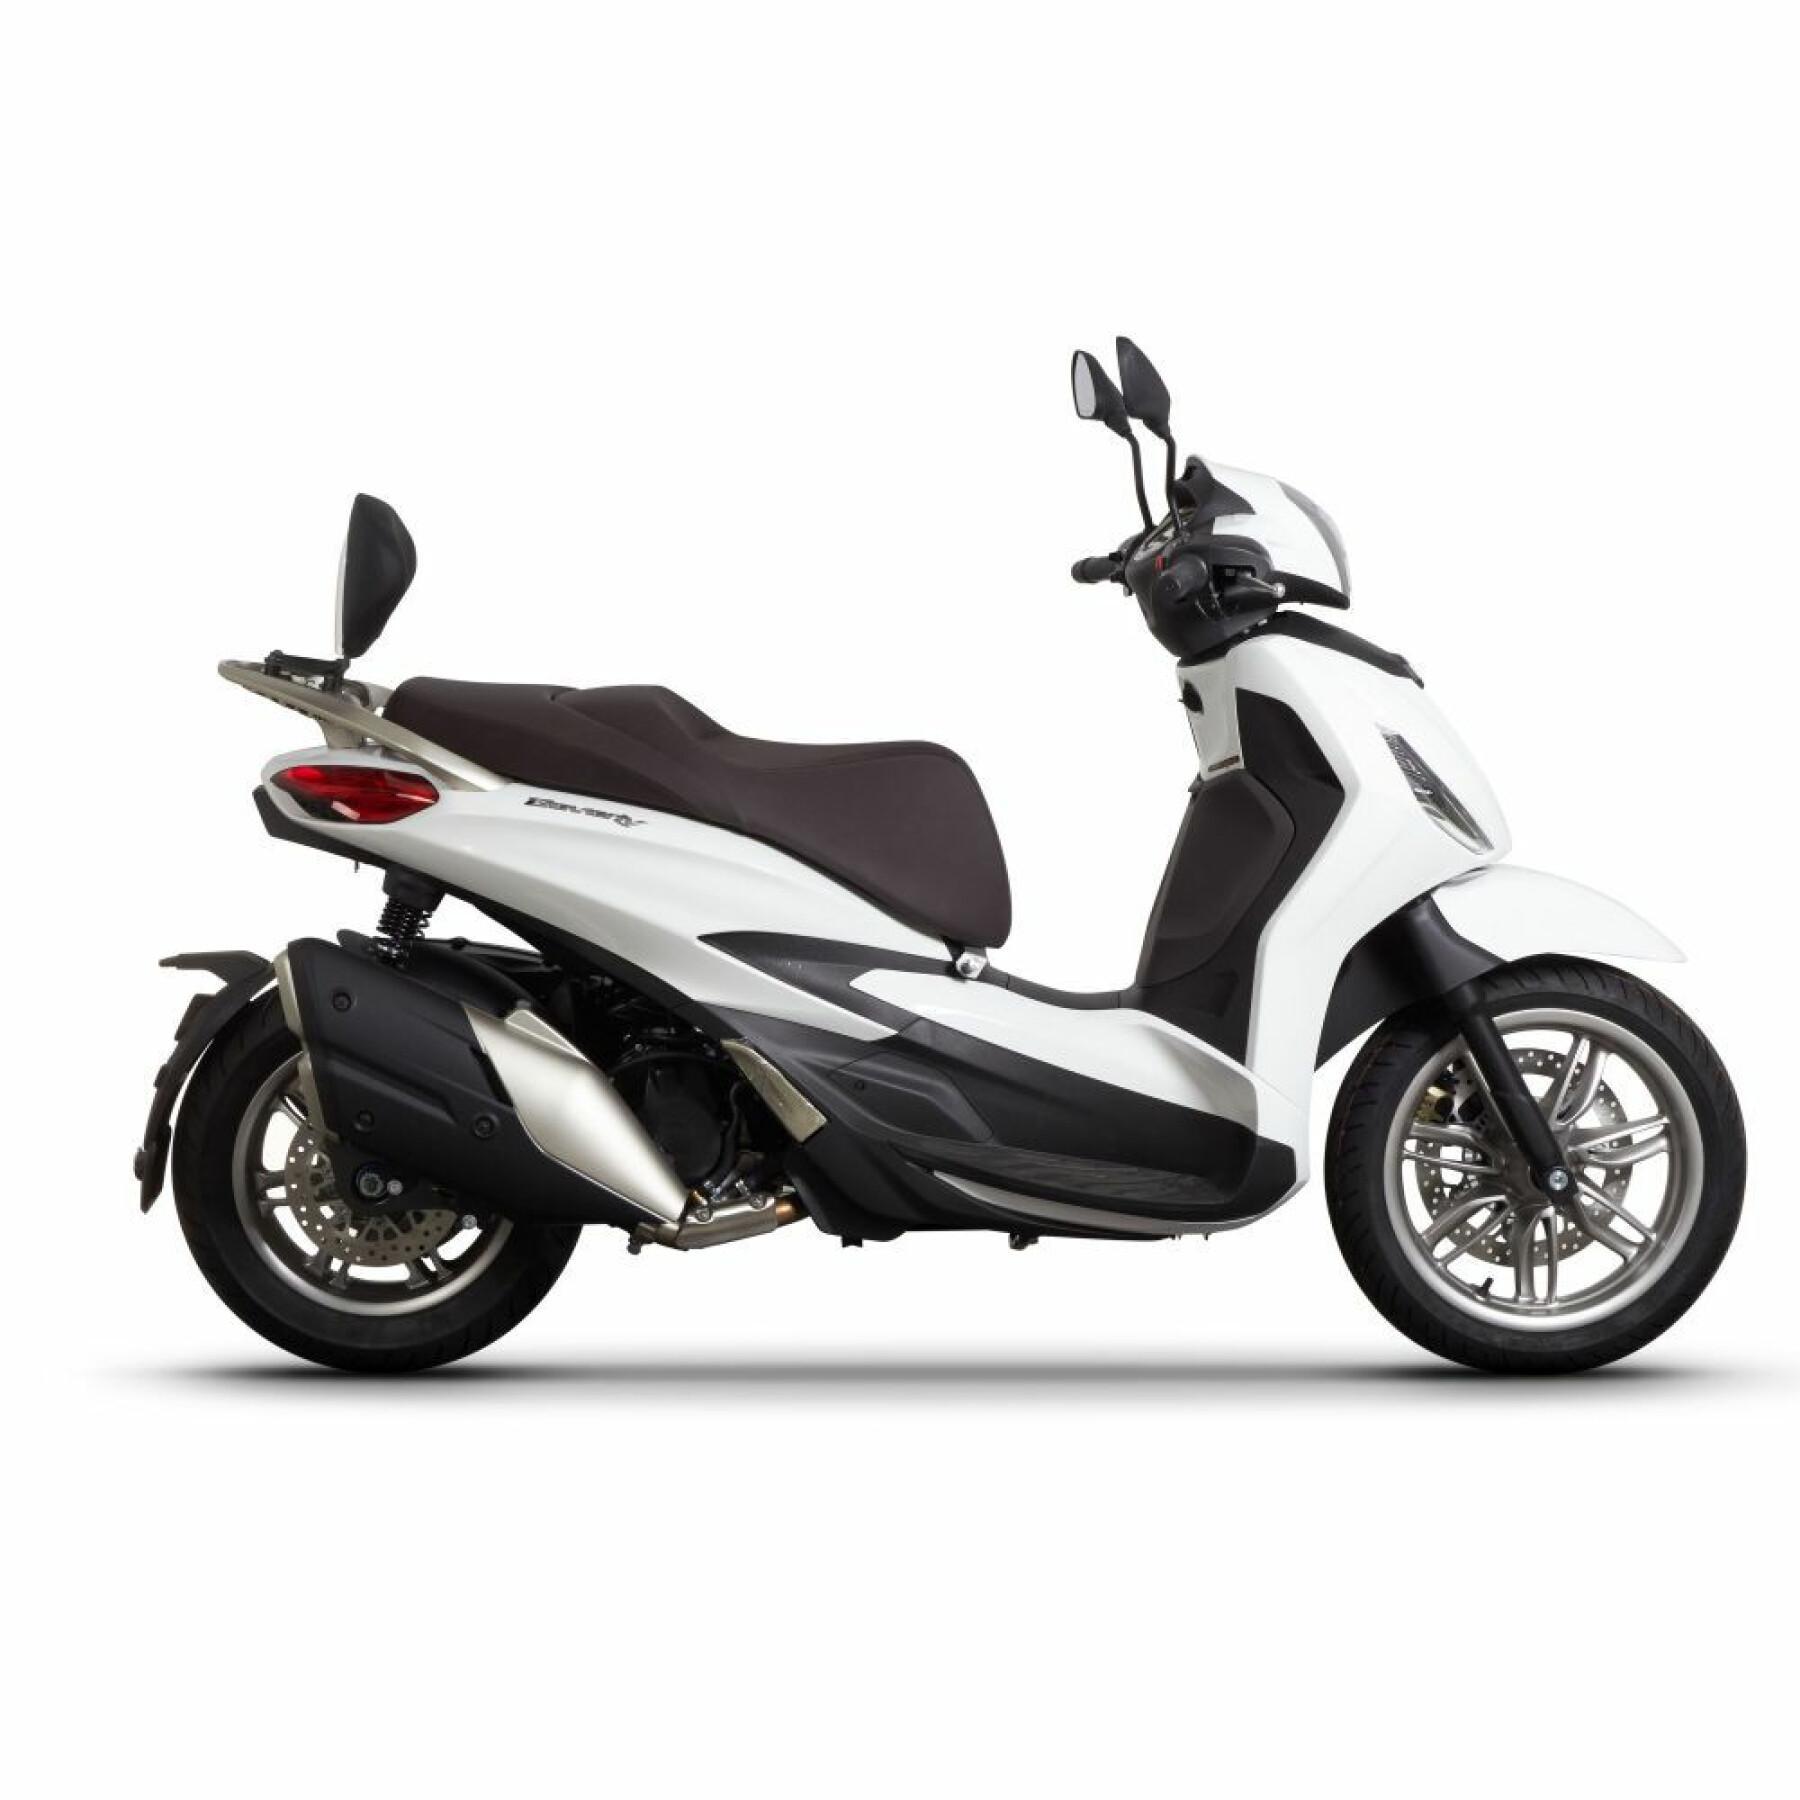 Fijación del respaldo del scooter Shad piaggio beverly 300/400/300s/400s